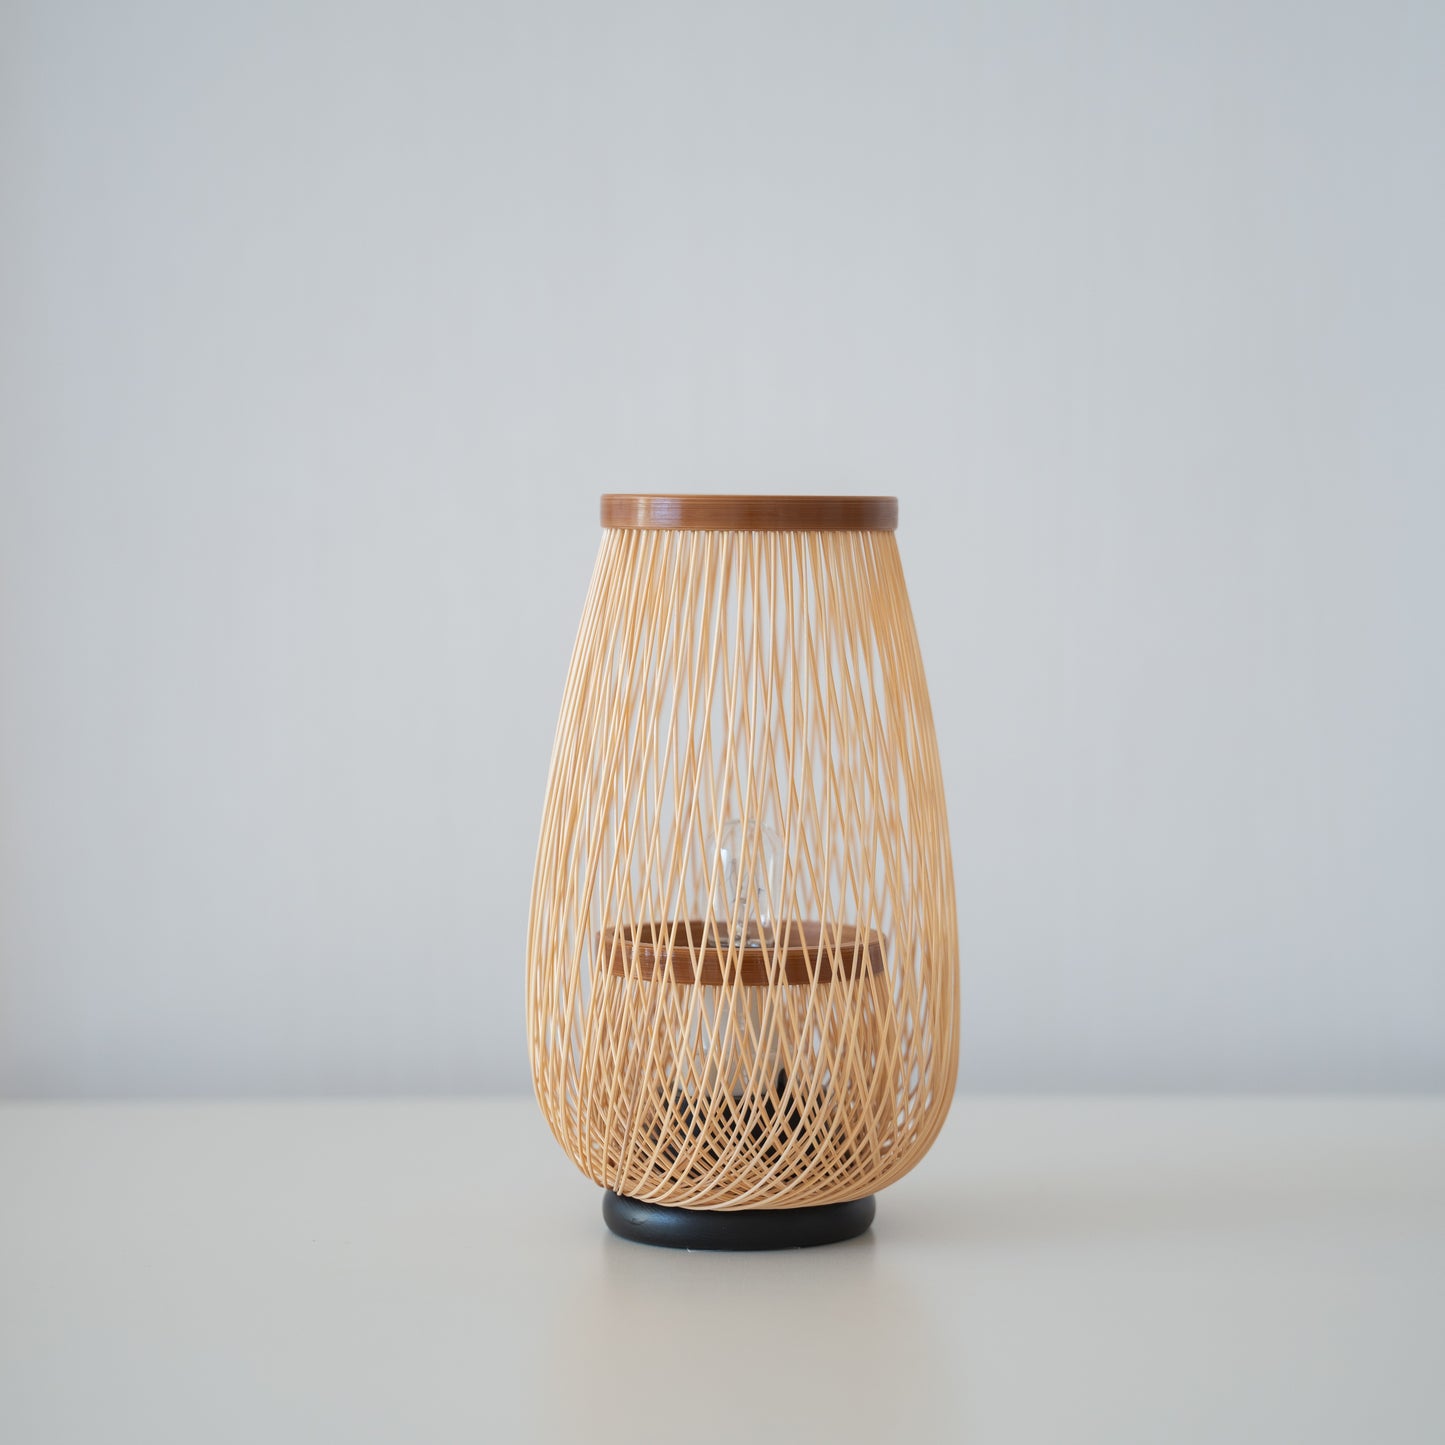 Japanese Bamboo Light “Flower Bud”